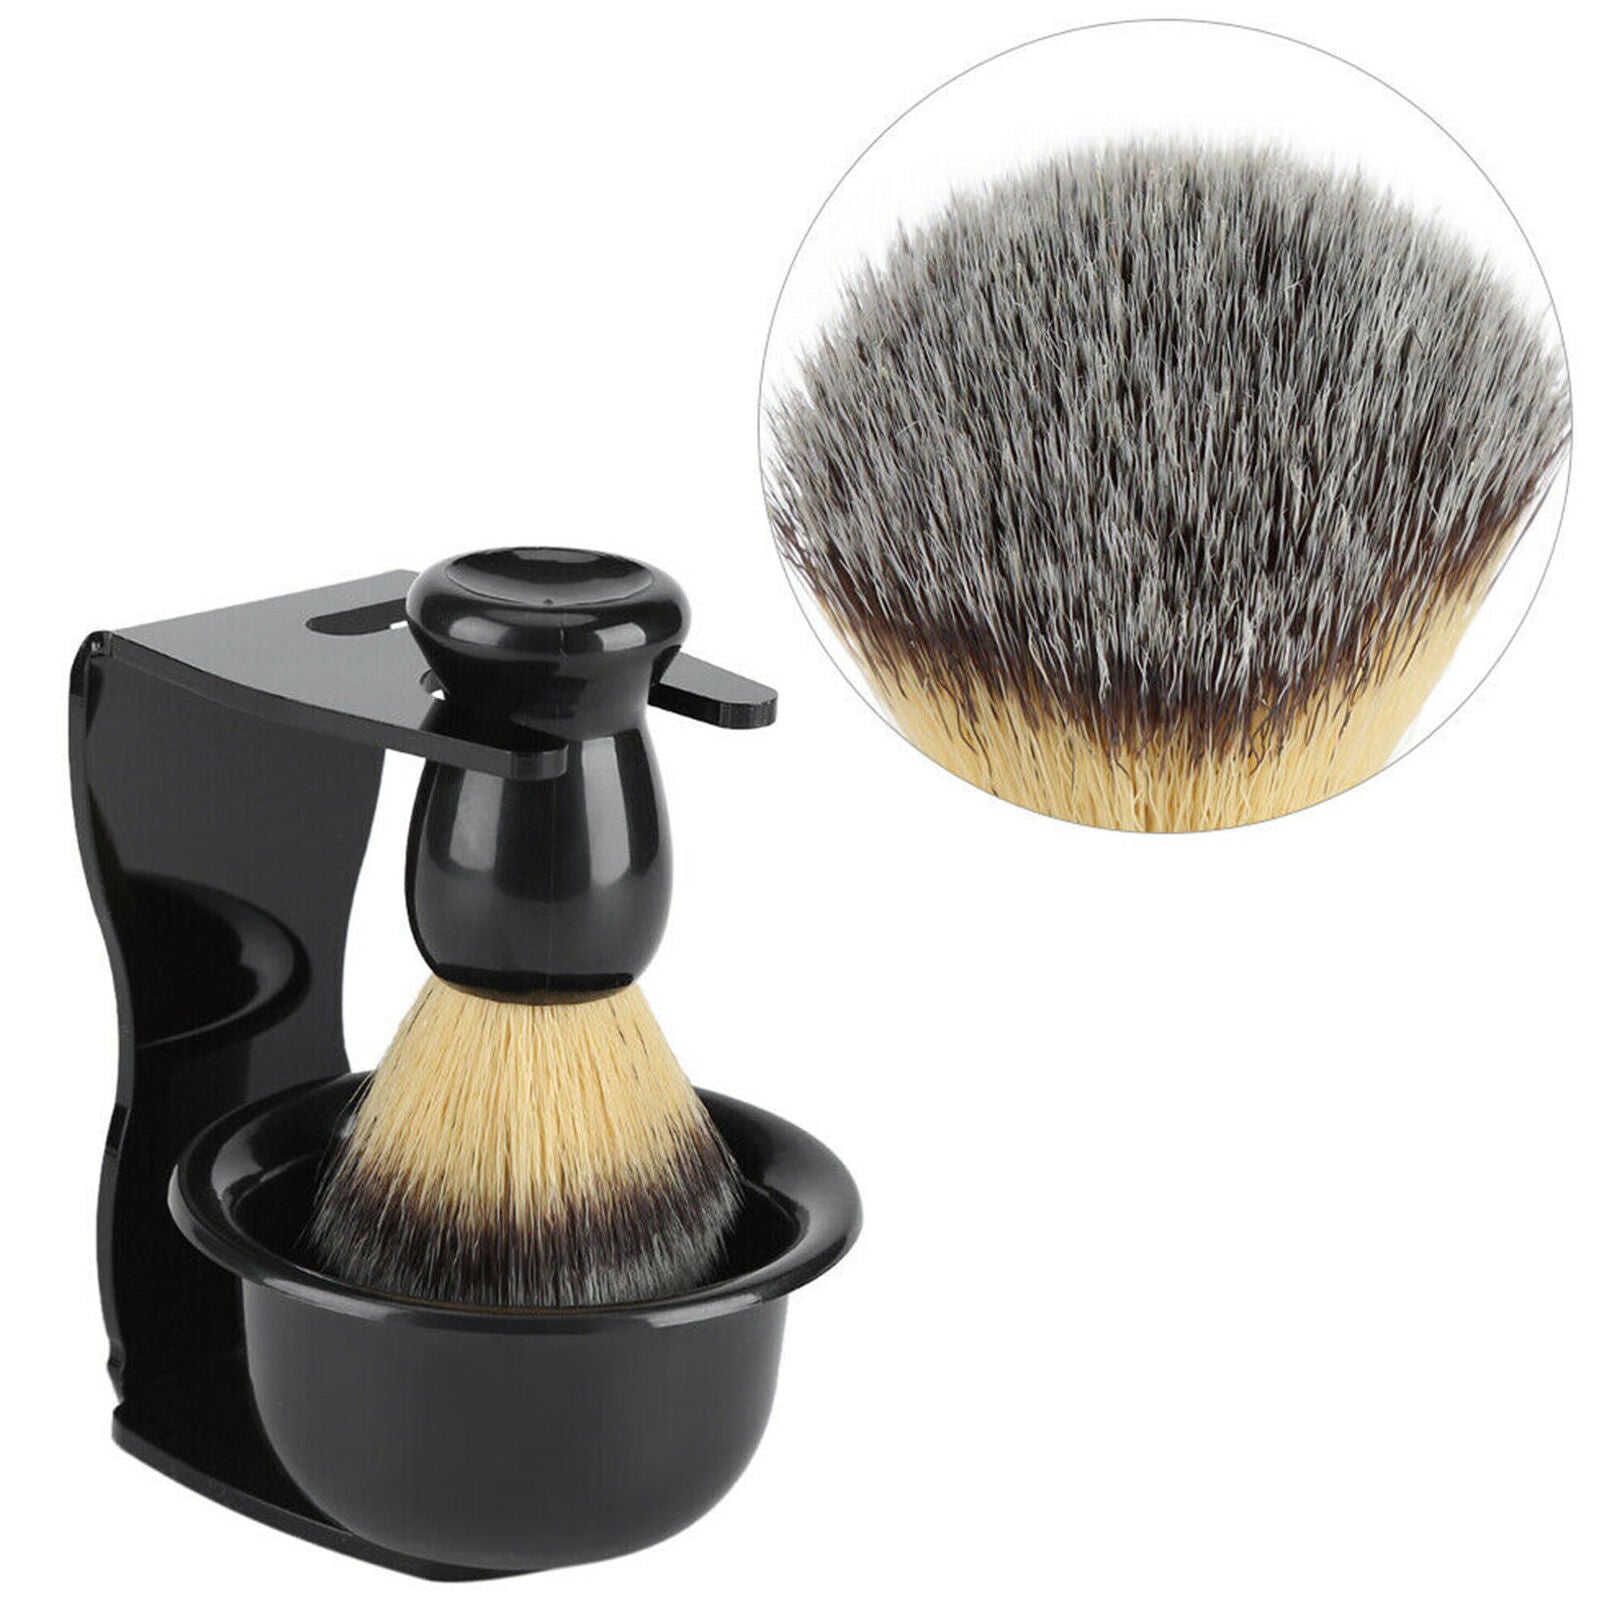 3 in 1 Home Salon Shaving Set Stand Holder & Shaving Brush & Bowl Cup Men